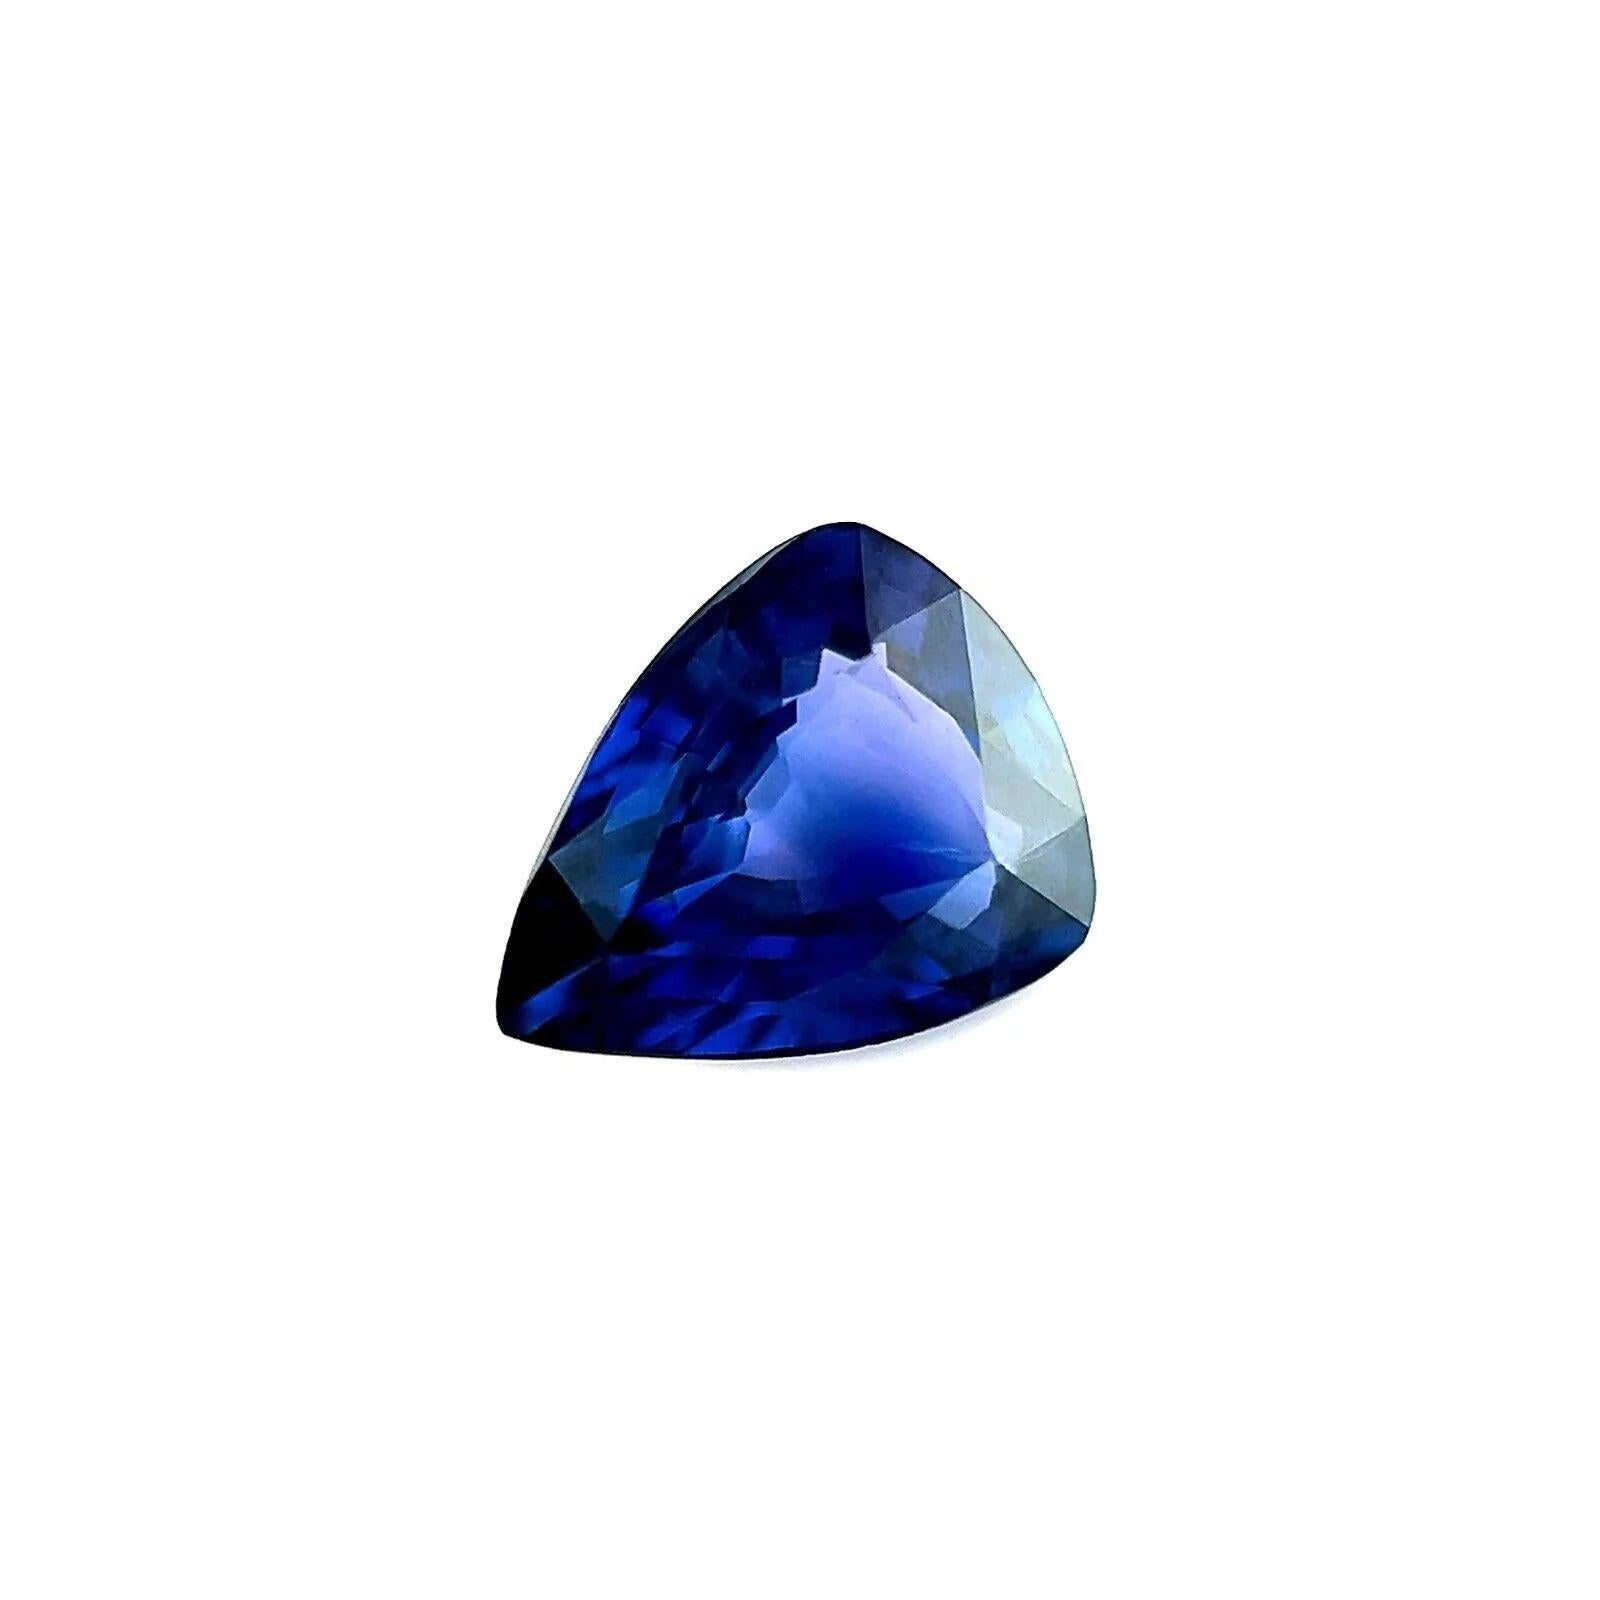 1,04 Karat Tiefblauer GIA-zertifizierter unbehandelter Saphir Birnenschliff Seltener Edelstein 7.3x5.8 mm

GIA Certified Fine Blue Sapphire Edelstein.
1,04 Karat Saphir mit einer schönen tiefblauen Farbe.
Vollständig von GIA zertifiziert, was